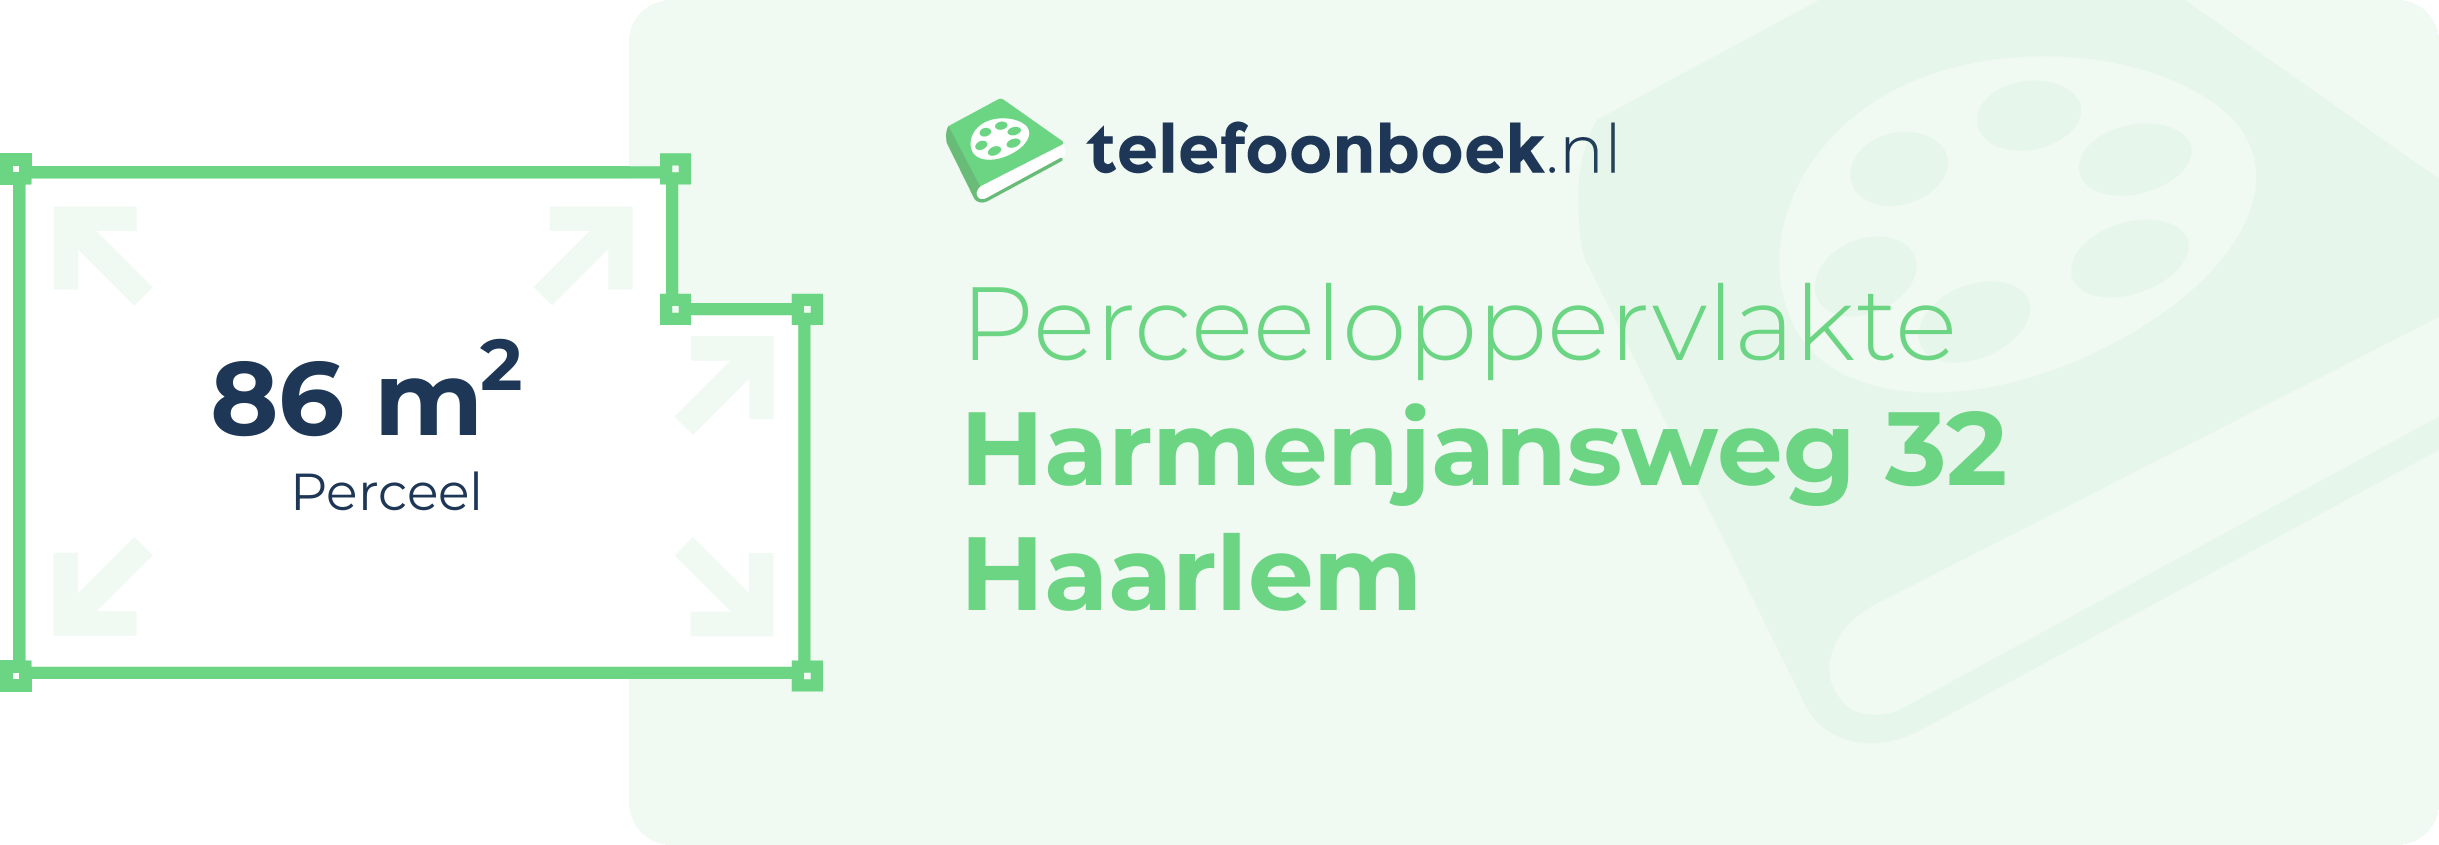 Perceeloppervlakte Harmenjansweg 32 Haarlem